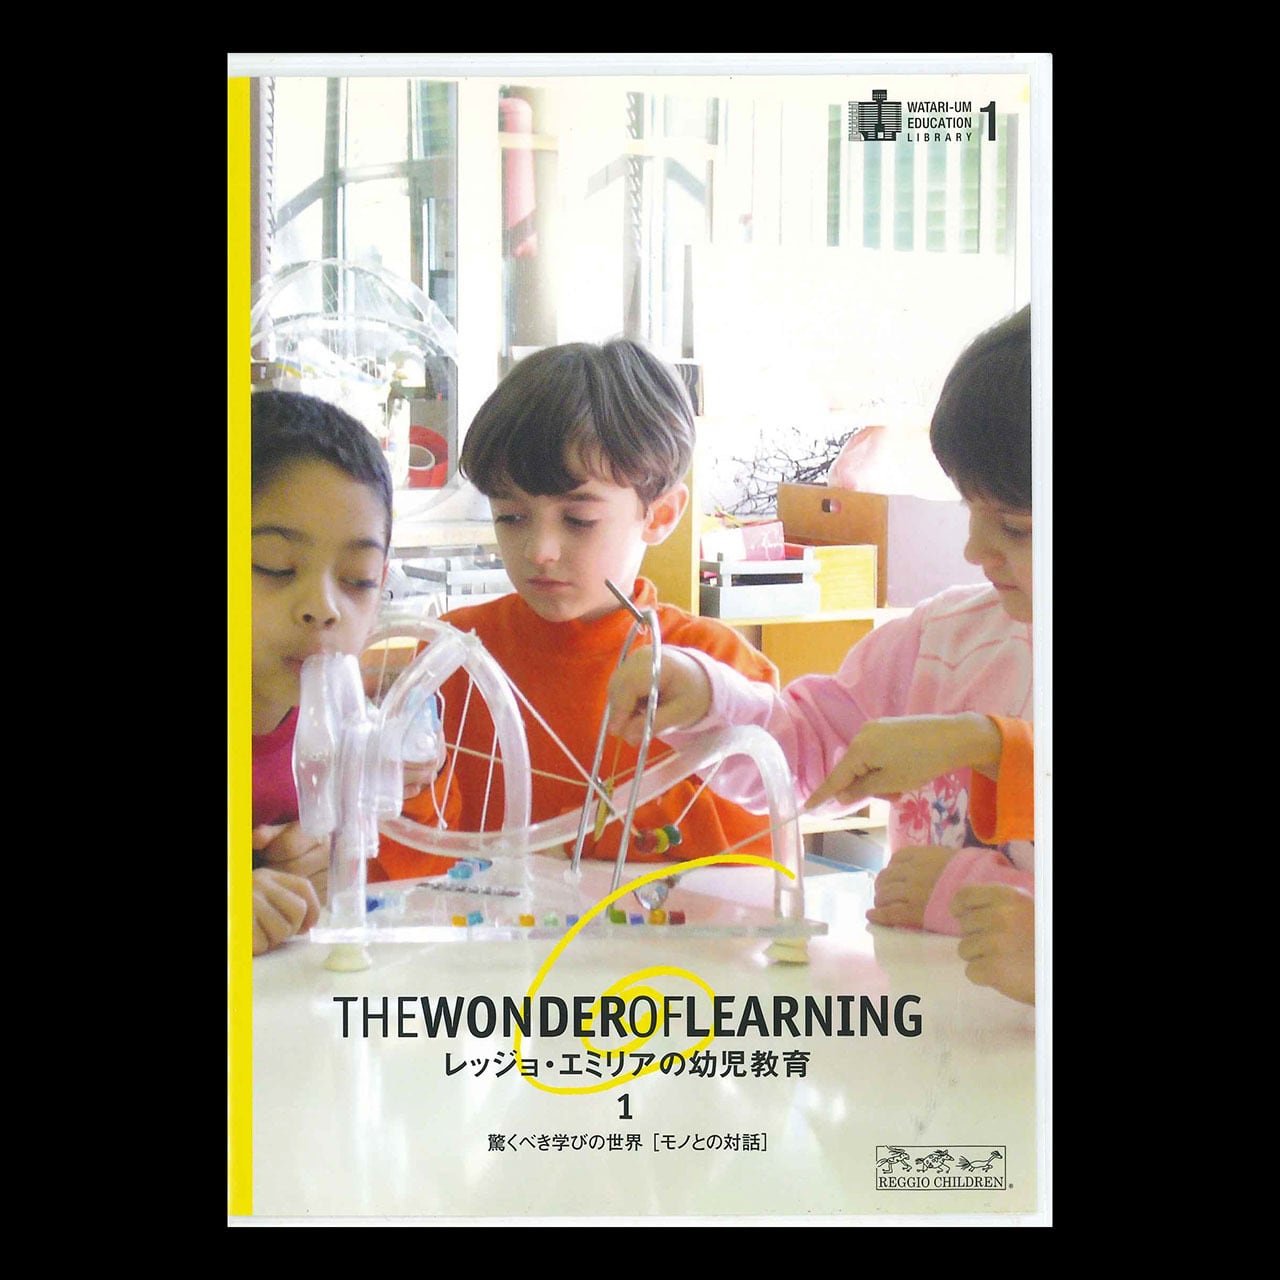 レッジョ・エミリア の幼児教育1  驚くべき学びの世界［モノとの対話］DVD